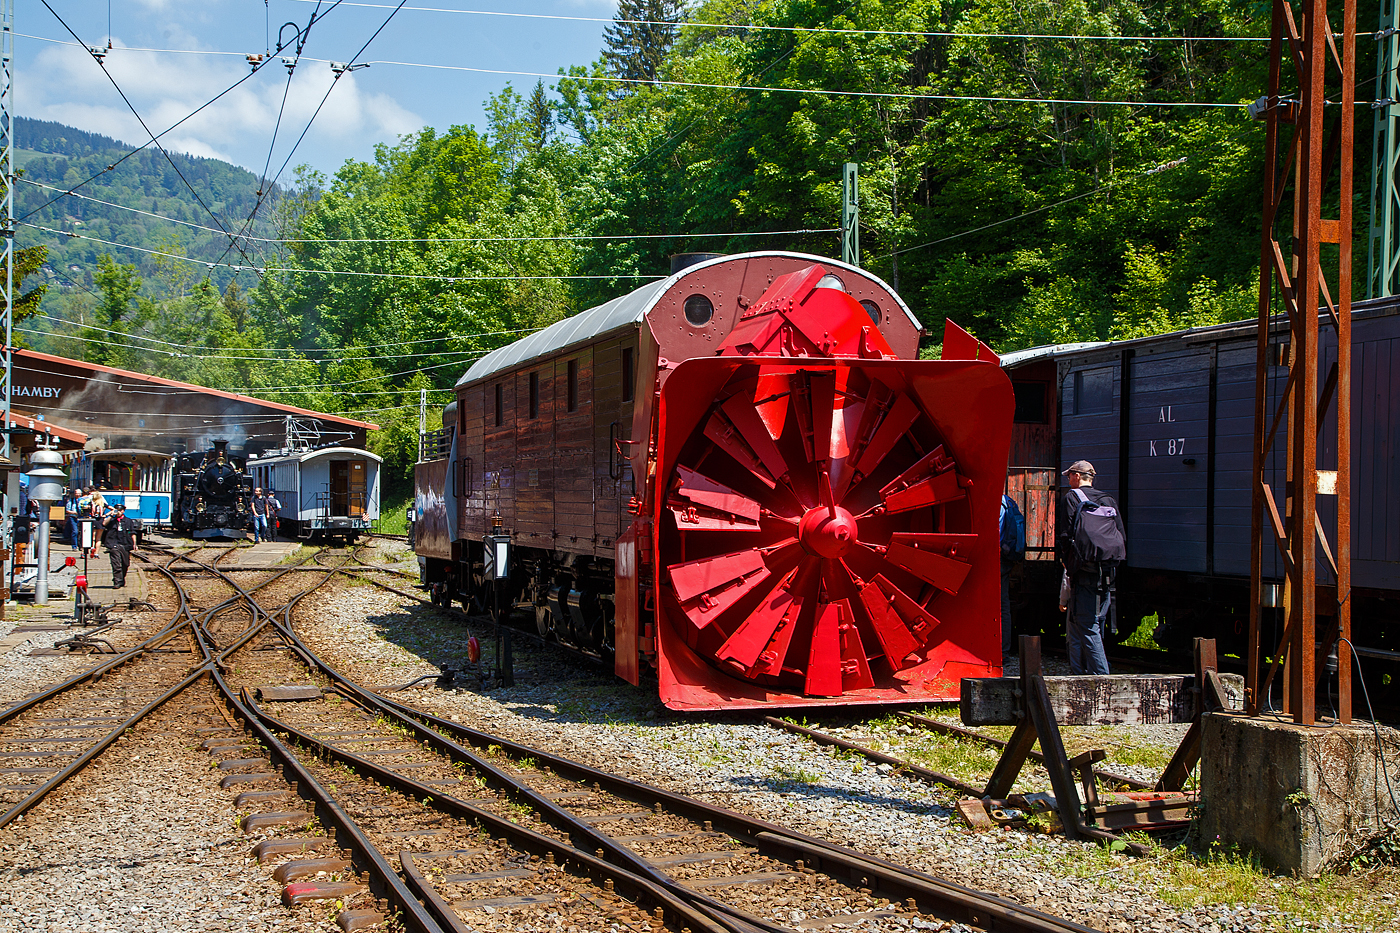 Die Selbstfahrende Dampfschneeschleuder R 1052 (ex Berninabahn) BB R 1052, ex RhB R 14, ex RhB Xrot d 9214), der Museumsbahn Blonay-Chamby, hier am 27.05.2023 auf dem Museums-Areal der (BC) in Chaulin.

Die Schneeschleuder wurde 1912 von der Schweizerischen Lokomotiv- und Maschinenfabrik (SLM) unter der Fabriknummer 2299 als R 1052 für die Berninabahn gebaut, 1944 um bezeichnet in RhB R 14, 1954 um nummeriert in RhB Xrot d 9214 (Die Bezeichnung Xrot d setzt sich zusammen aus: X = Dienstfahrzeug, rot = rotierend, d = dampfgetrieben.), 1990 ging sie an die DFB, 1996 wurde sie im Tausch gegen die ehemalige RhB R 12 von der B-C übernommen.

Dieses Fahrzeug wie auch das heute noch bei der RhB betriebsfähige Schwesterfahrzeug Xrot d 9213 (ex BB R 1051) sind dampfgetriebene Schneeschleudern mit eigenem Antrieb die für die Berninabahn (BB) gebaut wurden, die seit 1944 zur Rhätischen Bahn gehört. Im Gegensatz zu den bisher gebauten Fahrzeugen, auch der zwei Dampfschleudern der RhB-Stammstrecke, handelt es sich bei den beiden Bernina-Schleudern um selbstfahrende Fahrzeuge. Die Berninabahn entschied sich hierzu, weil in den engen Kurven mit nicht genügend hoher Kraft geschoben werden konnte und die Bahn selbst keine Fahrdraht-unabhängigen Triebfahrzeuge besaß. Die Schleudern wurden dennoch normalerweise mit Schiebetriebfahrzeugen eingesetzt, damit die gesamte Kesselleistung für die Dampfmaschine des Schleuderrades zur Verfügung stand.

Mit der Übernahme der Berninabahn durch die Rhätische Bahn (RhB) erhielten die beiden Schleudern die neuen Bezeichnungen R 13 und R 14, 1950 dann Xrot d 9213 und 9214. Die beiden Fahrzeuge befanden sich bis 1967 im regelmäßigen Einsatz und wurden danach durch modernere Schleudern ersetzt. Die Xrot d 9213 wird von der RhB im Heimatdepot in Pontresina weiterhin betriebsfähig gehalten. Sie wird heute vor allem zu touristischen Zwecken noch betrieben, und zwar im Rahmen so genannter Fotofahrten; zuweilen kommt sie aber auch noch bei der Räumung zum Einsatz.

Die Achsformel ist C'C', das Fahrzeug verfügen nach Bauart Meyer über zwei dreiachsige Triebdrehgestelle die durch vier Zylinder angetrieben werden, diese befinden sich unten mittig zwischen den Triebgestellen, darüber befindet sich der Antrieb für die Schneeschleuder, die von zwei weiteren Zylindern angetrieben wird. Der Durchmesser des Schleuderrads beträgt 2,5m, welches mit bis zu 170 U/min dreht und so bis zu drei Meter hohe Schneemassen beseitigen kann.
Gekuppelt ist die Schneeschleuder mit einem zweiachsigen Tender.

Die Xrot d 9214 wurde am 26. Januar 1968 zu einem einmaligen Großeinsatz auf der Arosabahn herangezogen. Geschoben von zwei ABDe 4/4 hatte sie die tiefverschneite Strecke zwischen Langwies und Arosa zu räumen und benötigte für den nur acht Kilometer langen Abschnitt acht Stunden.

TECHNISCHE DATEN:
Gebaute Anzahl: 2 (BB 1051, BB 1052)
Hersteller: SLM
Baujahre: 1910 und 1912
Ausmusterung: 1967 (1052/ 9214), Die 1051 ist als RhB Xrot d 9213 betriebsfähig
Spurweite: 1.000 mm (Meterspur)
Achsformel: C'C'
Länge: 13.865 mm
Höhe: 3.800 mm
Breite: 2.800 mm, max. 3.600 mm
Gesamtradstand: 10.655 mm (inkl. Tender)
Kleinster befahrbarer Gleisbogen: R=45 m
Dienstgewicht: 45 t
Dienstgewicht mit Tender: 63,5 t
Höchstgeschwindigkeit: 35 km/h
Indizierte Leistung Antrieb: 221 kW
Indizierte Leistung Schneeschleuder: 368 kW
Treibraddurchmesser: 750 mm
Zylinderanzahl: 4 für Antrieb und 2 für Schneeschleuder
Kesselüberdruck: 14 bar
Wasservorrat: 7 m³
Kohlevorrat: 4 t